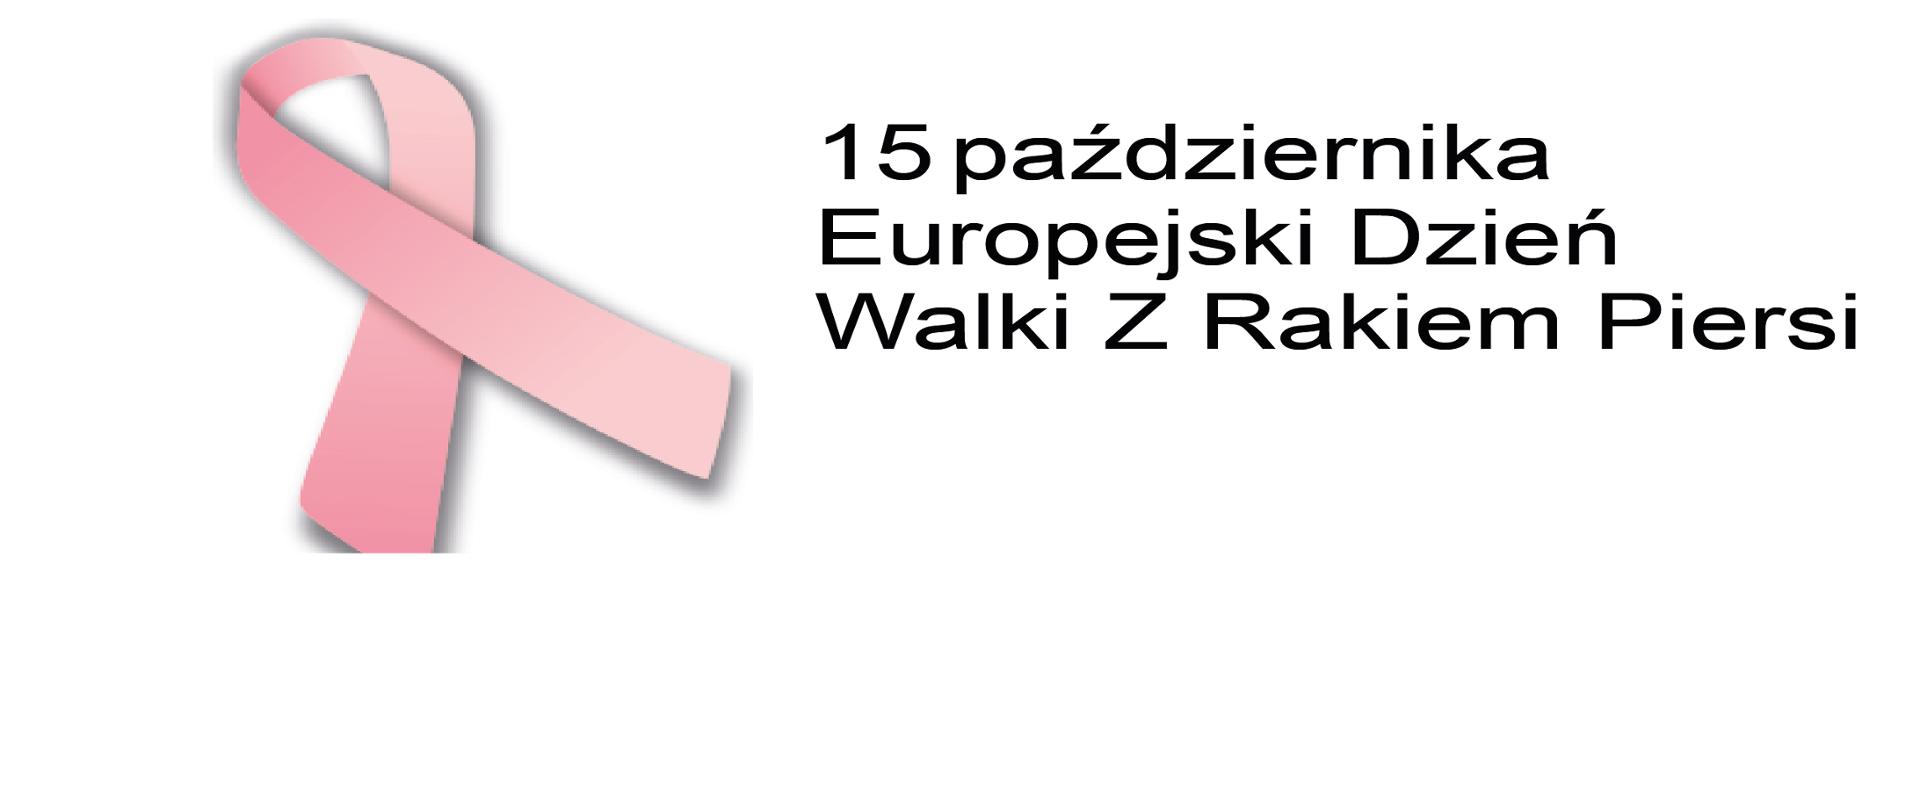 Po lewej stronie różowa wstążeczka. Obok napis: 15 października Europejski Dzień Walki z Rakiem Piersi
